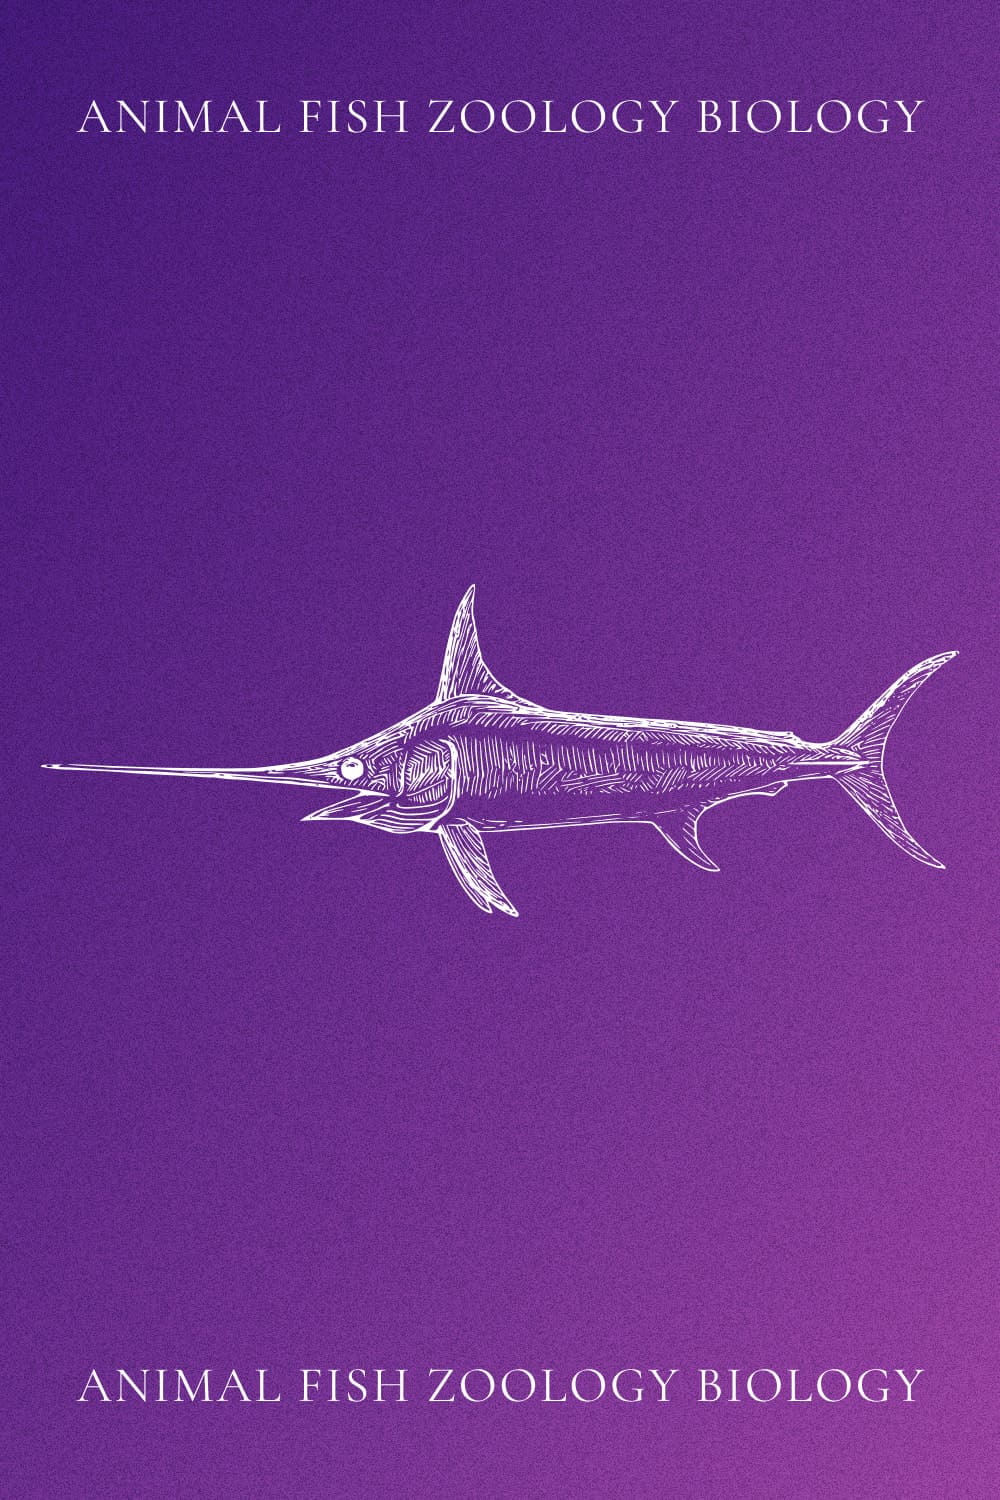 Animal Fish Zoology Biology - Pinterest Image.